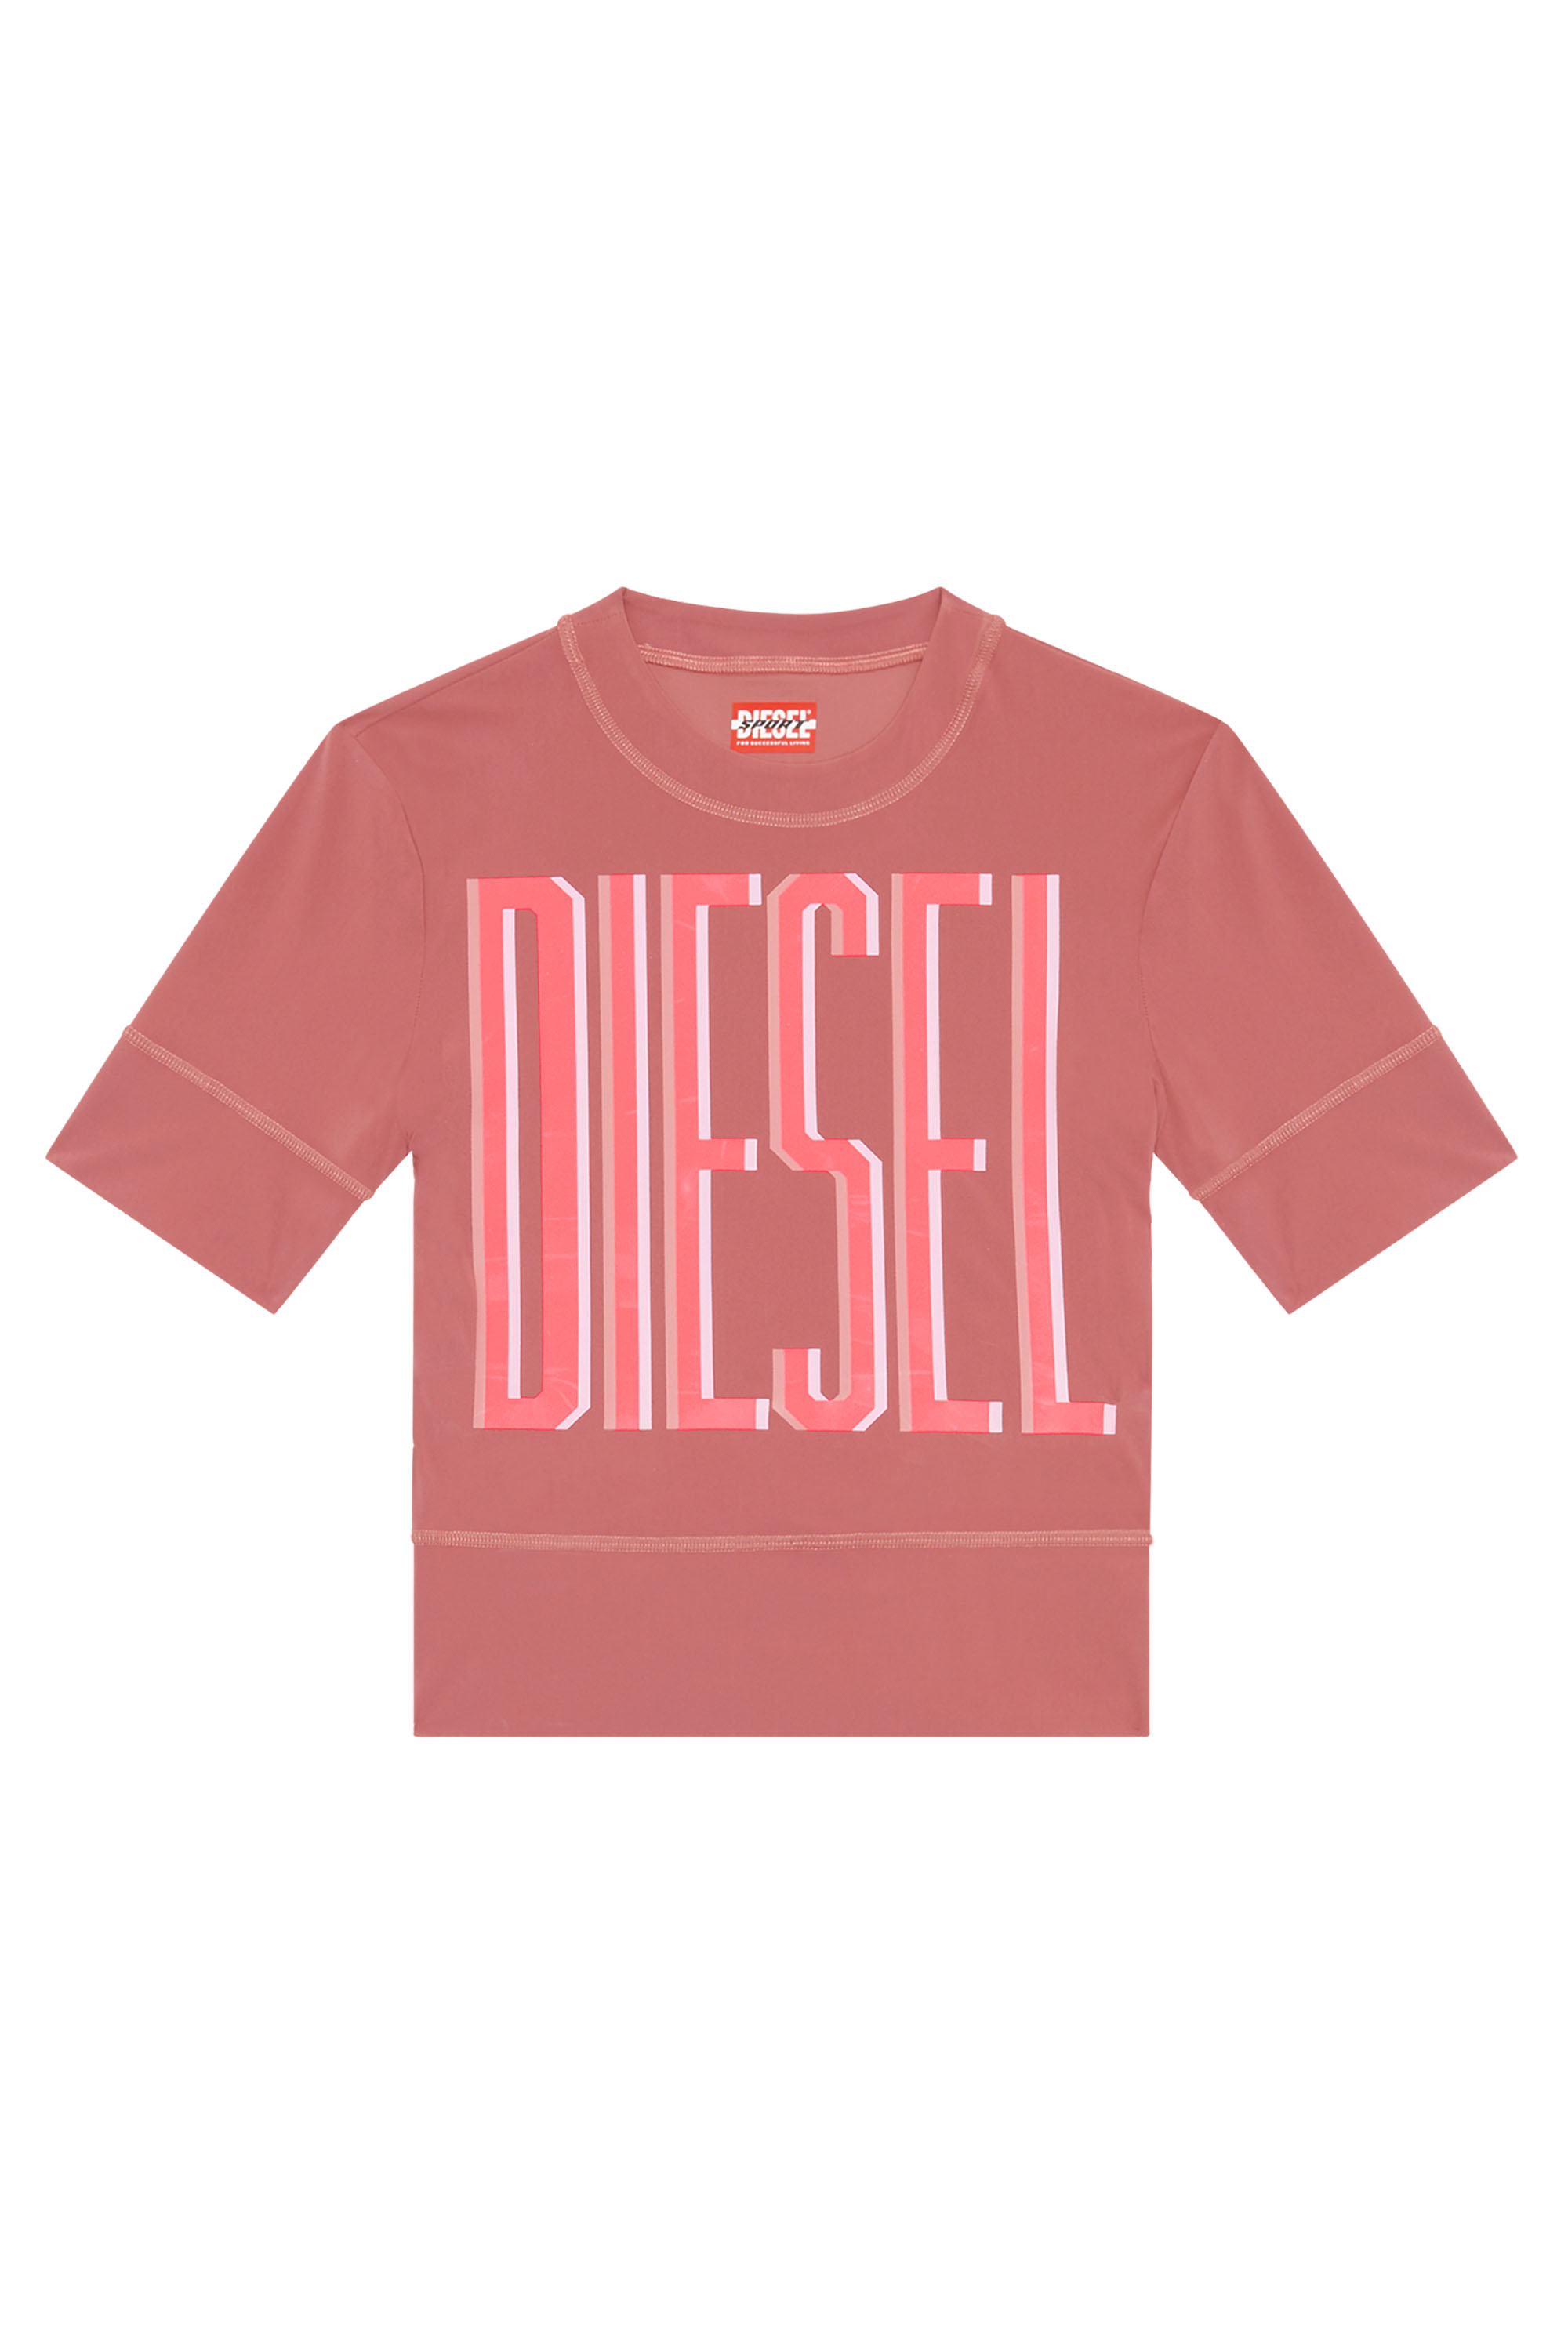 Diesel - AWTEE-JULES-WT06, Brown - Image 3